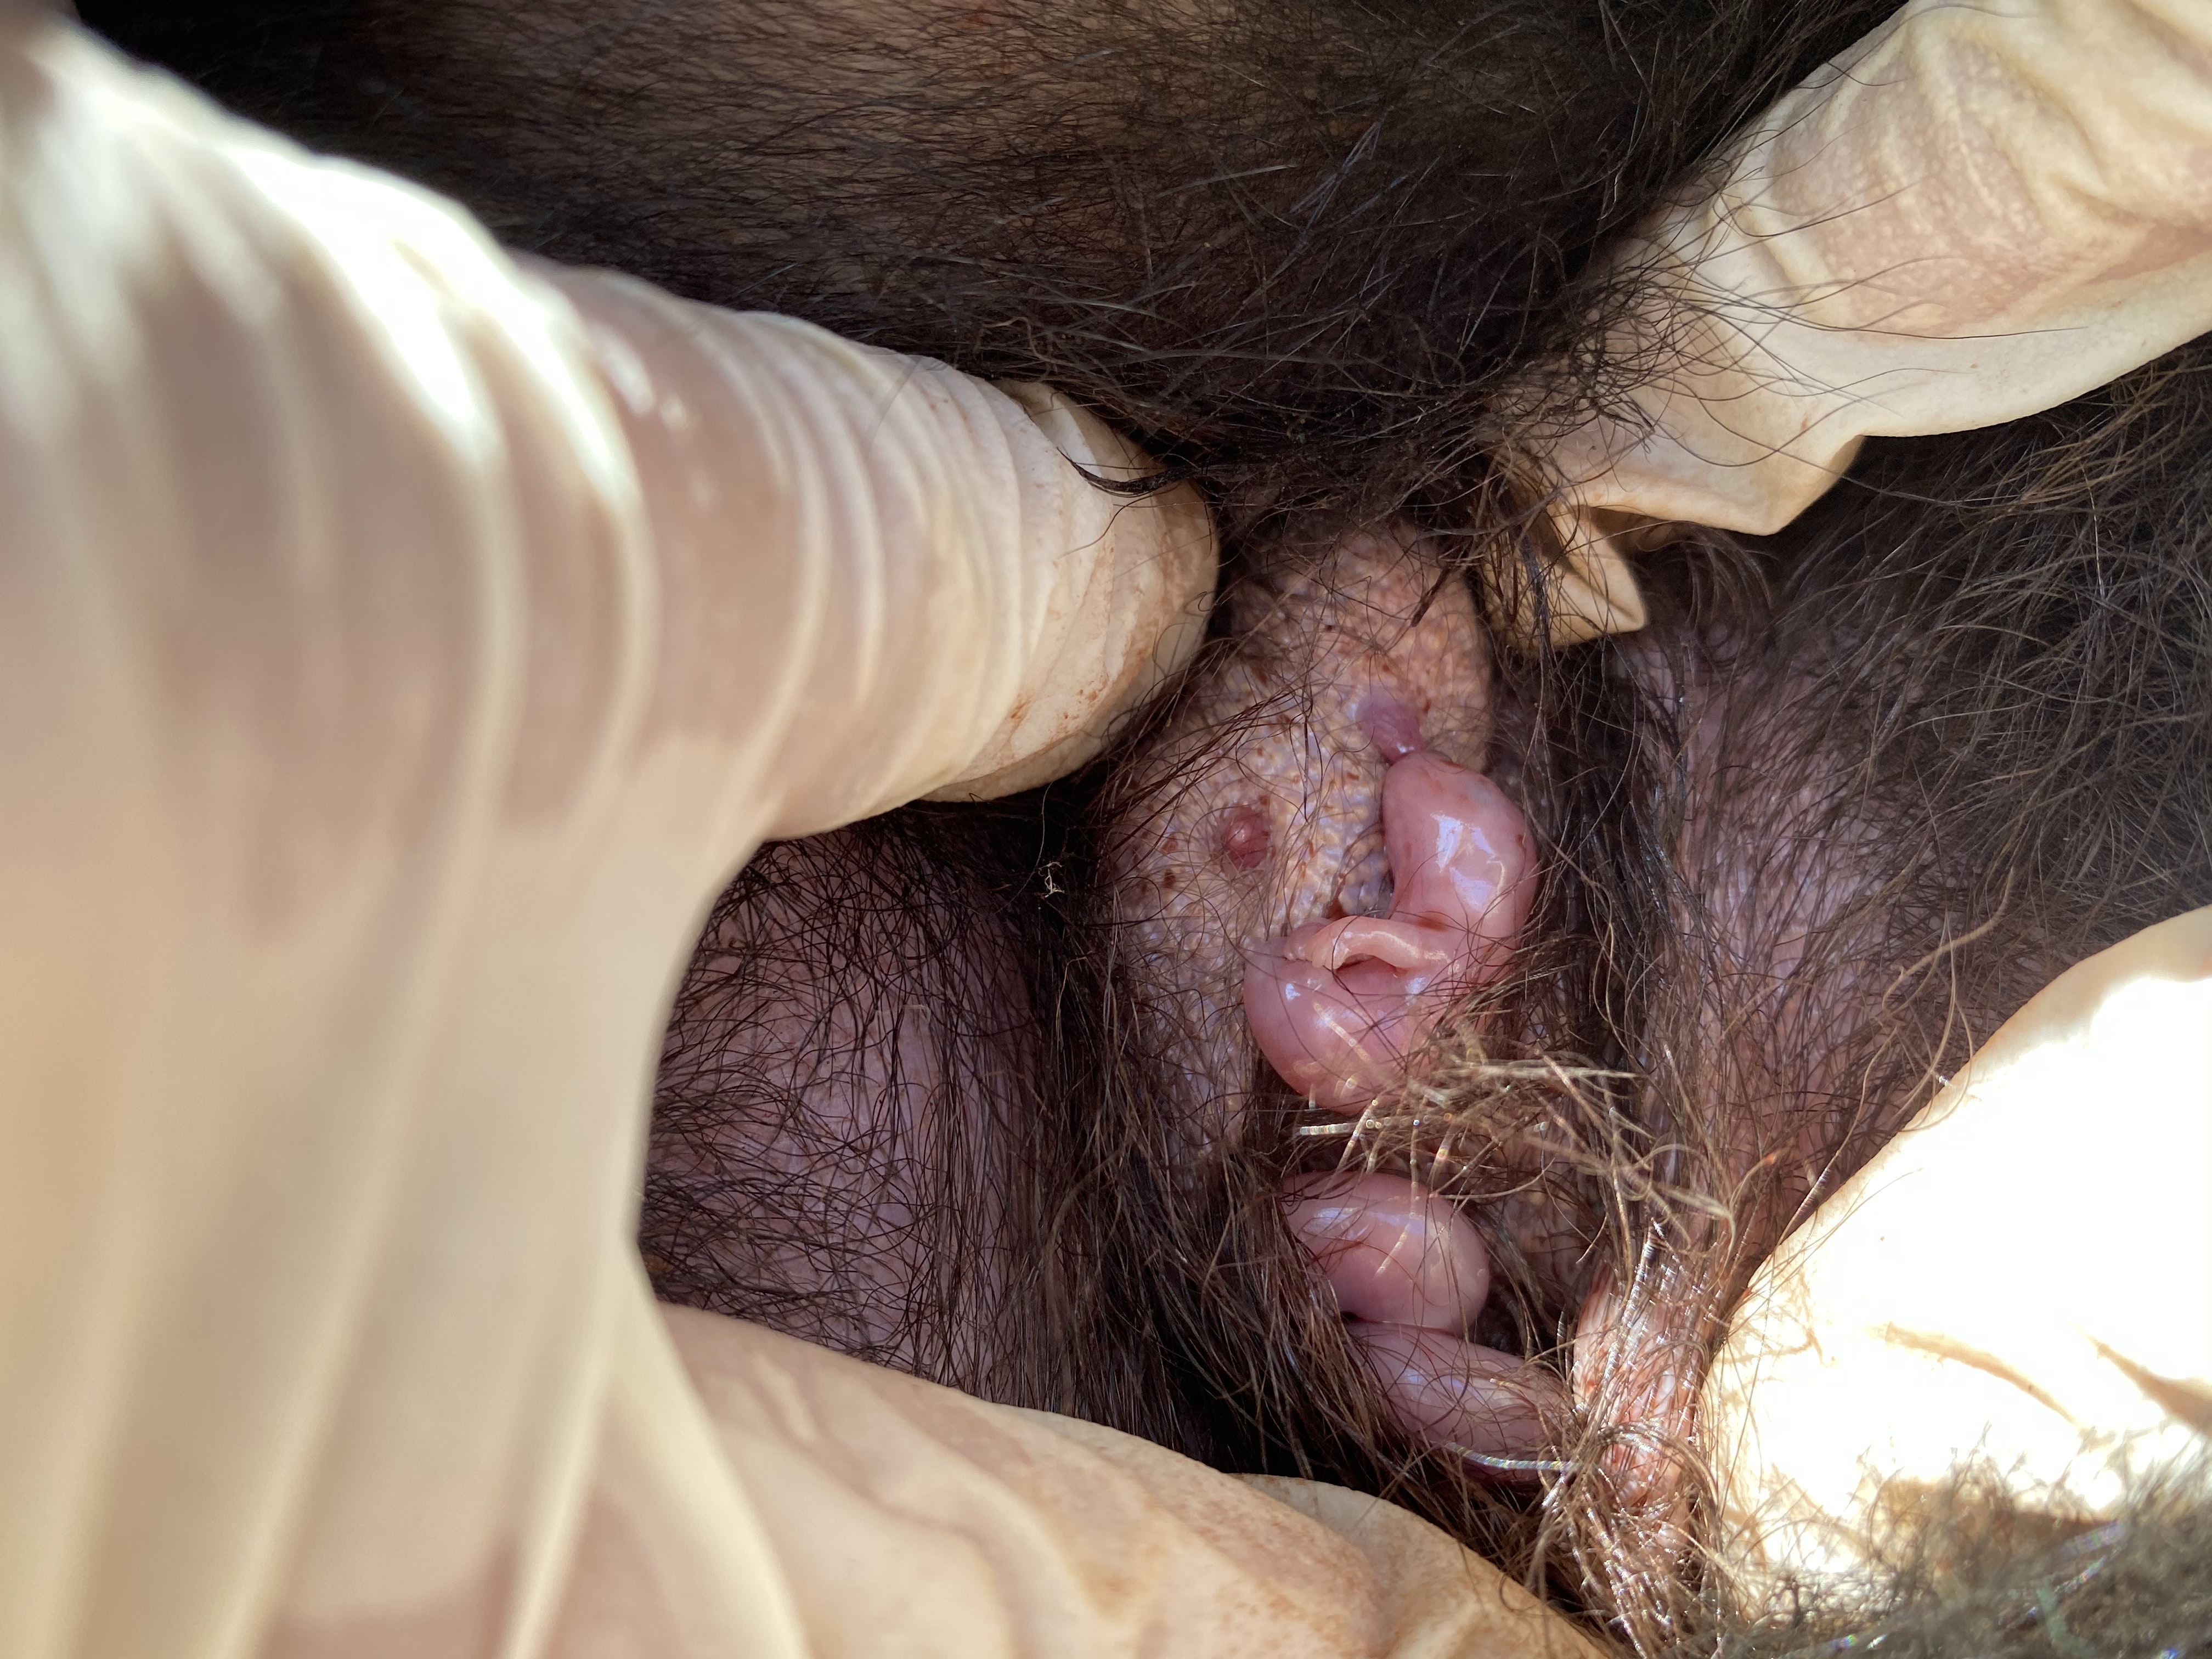 Tasmanian devil baby in pouch